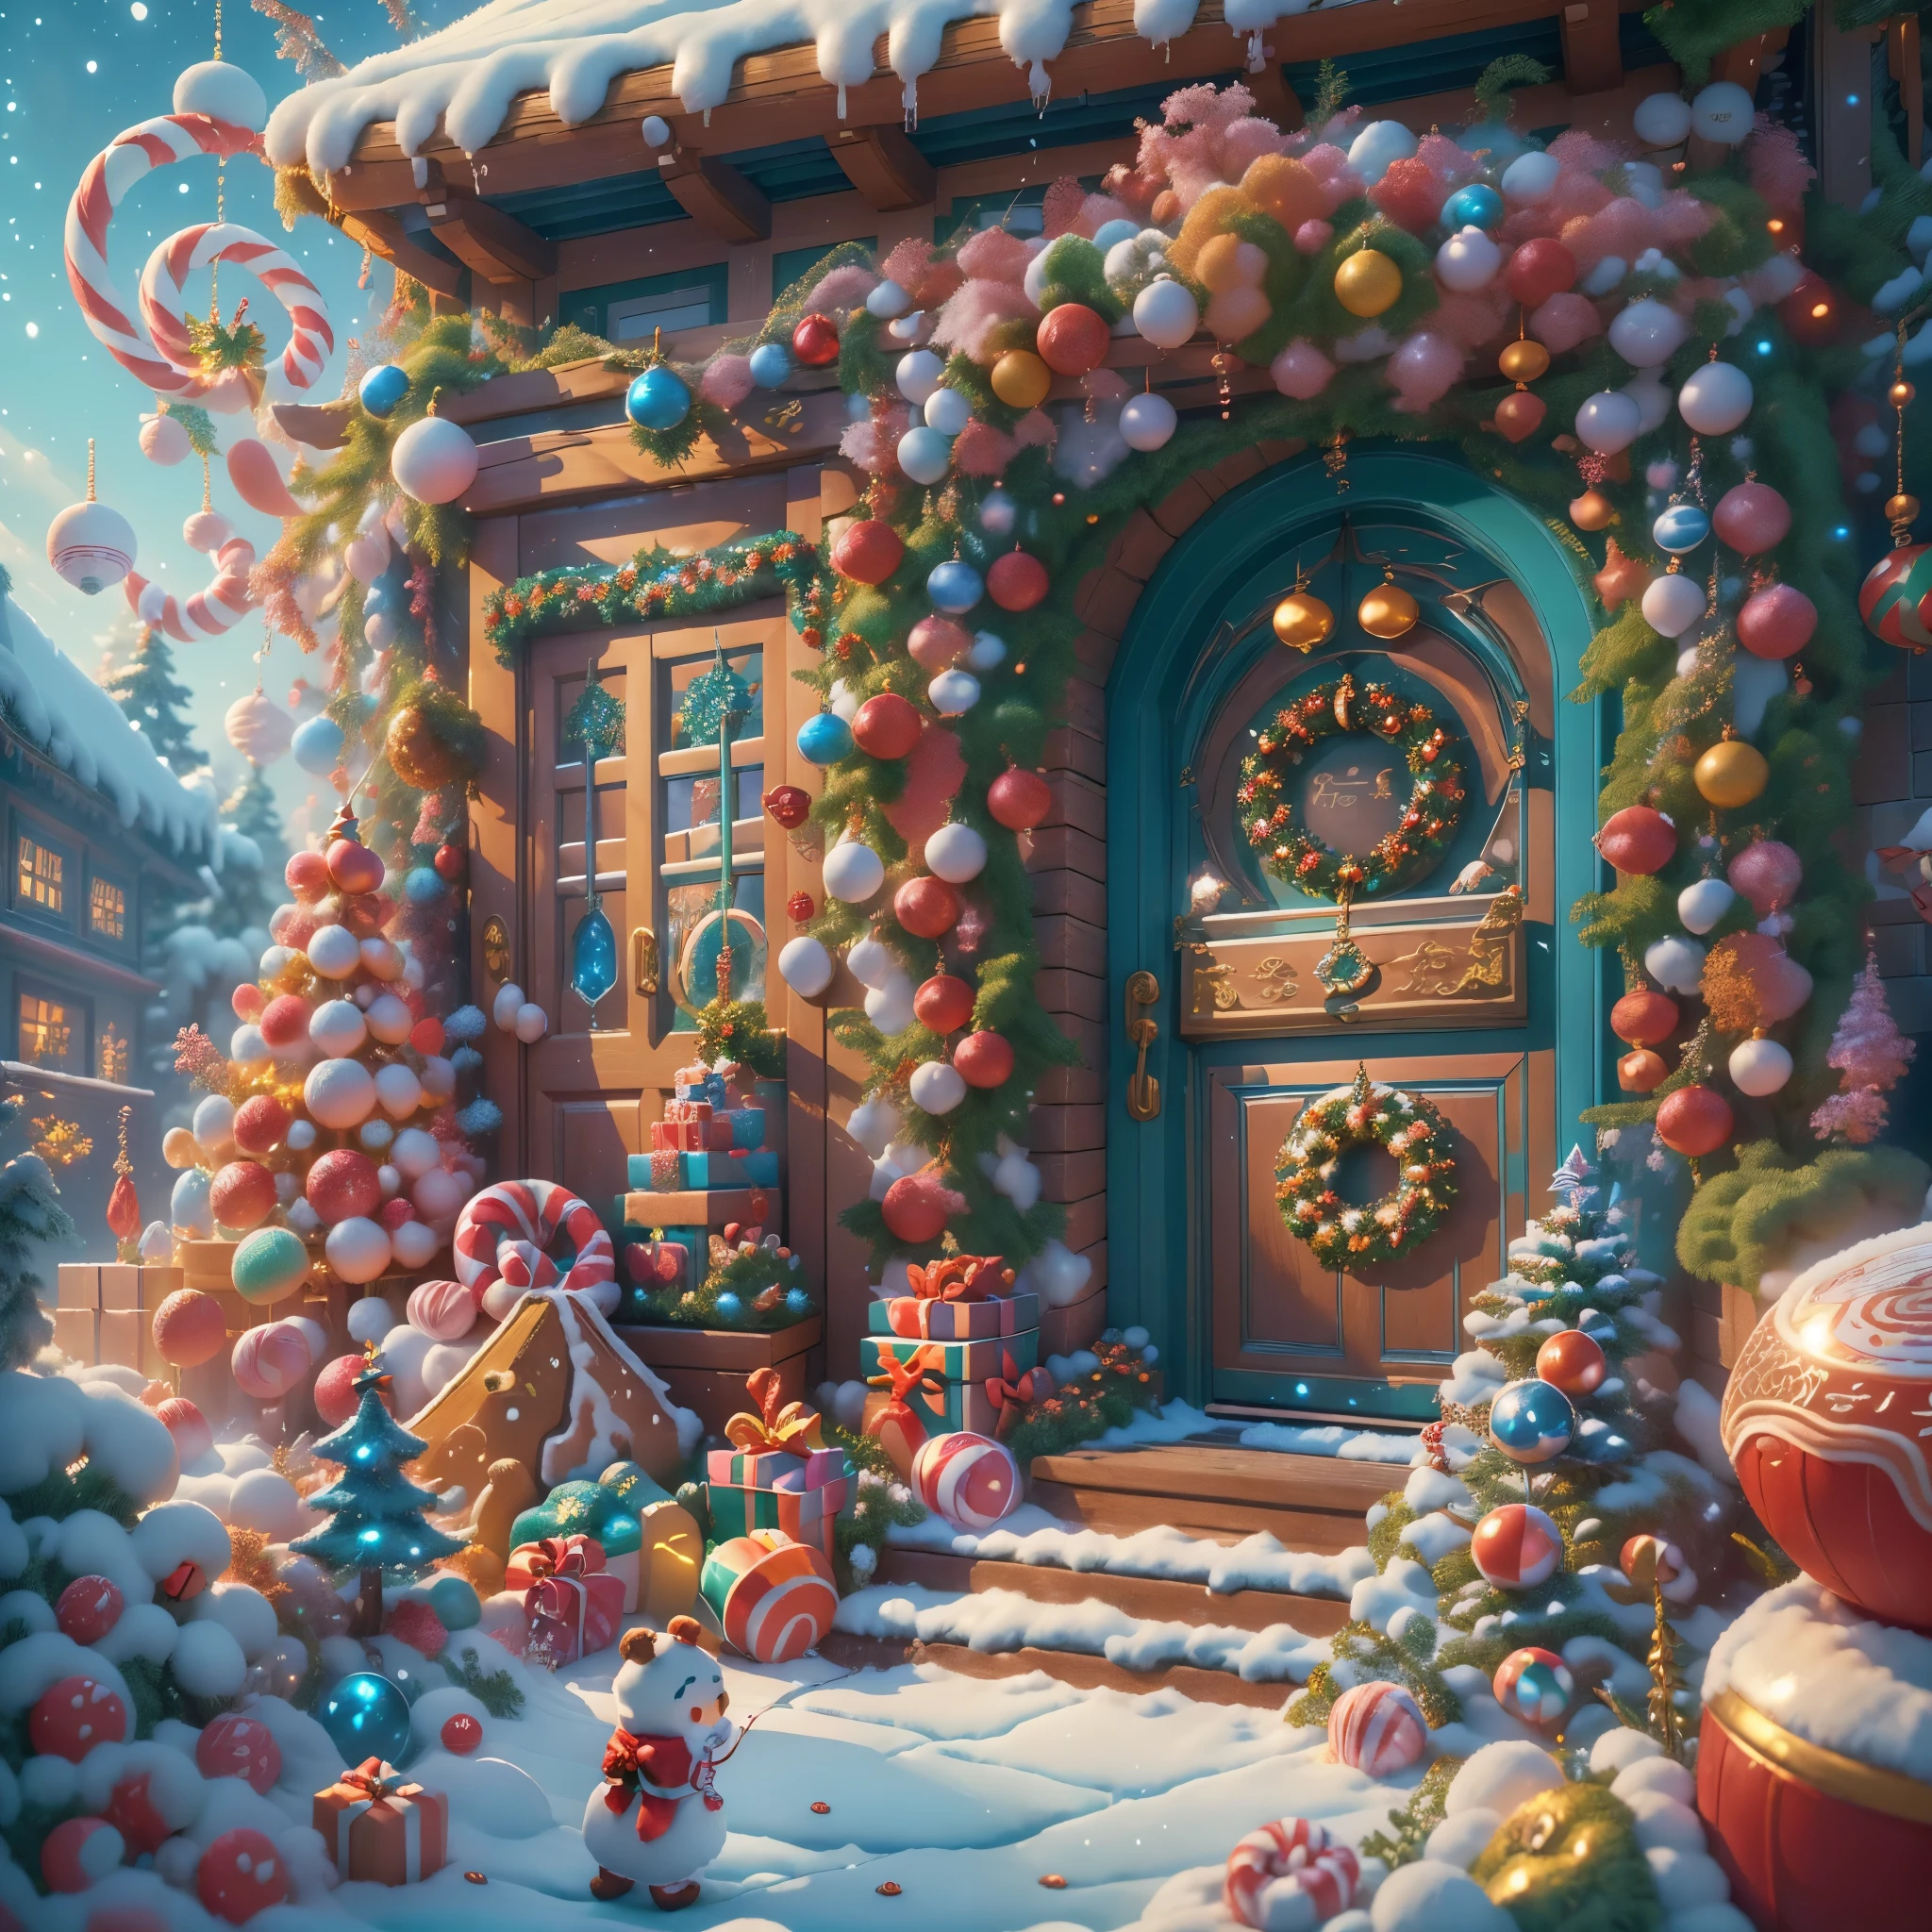 (chef-d&#39;œuvre),（ultra - détaillé:1.3），(fermer: 1.8), meilleure qualité，（棉花糖一样的白Yuki:1.2），（Cour de Noël dans un conte de fées bleu:1.6），(Anneau inférieur de décoration de Noël sur la porte bleue: 1.8),（soleils），(((De délicieux bonbons devant la porte，Sapin de Noël, cadeaux, les chaussettes de Noël, mignon bonhomme de pain d&#39;épice，éclaboussure de maison en chocolat))), Style d&#39;illustration, décorations, Petite cour de Noël fantastique, Joli style de conception, Yuki，rays of soleilshine，couleur vive、 ((Fantaisie fantaisiste et charmante)), Portrait surréaliste, (Cabane de Noël sur le thème fantastique), (Accessoires de Noël fantaisistes), (coloré, Paysage plein de bonbons), (enchanteur, 神奇的Sapin de Noël), (un vibrant, Cour couleur bonbon), (Route des bonbons), (porte bonbon bleue) a distance, (Comme un miroir, 不对称chef-d&#39;œuvre钟表配件), (Riche, couleurs fantastiques), (温暖的rays of soleilshine), (rêve en quatre dimensions), (enchanteur atmosphere), (composition ludique), (生动的rays of soleilshine效果), 1.4x réalisme，hyper HD，Montré dans cette belle scène，(Très méticuleux，Conception raisonnable，Lignes claires，Haute netteté，chef-d&#39;œuvre，art officiel，effet de lumière de film，8k)